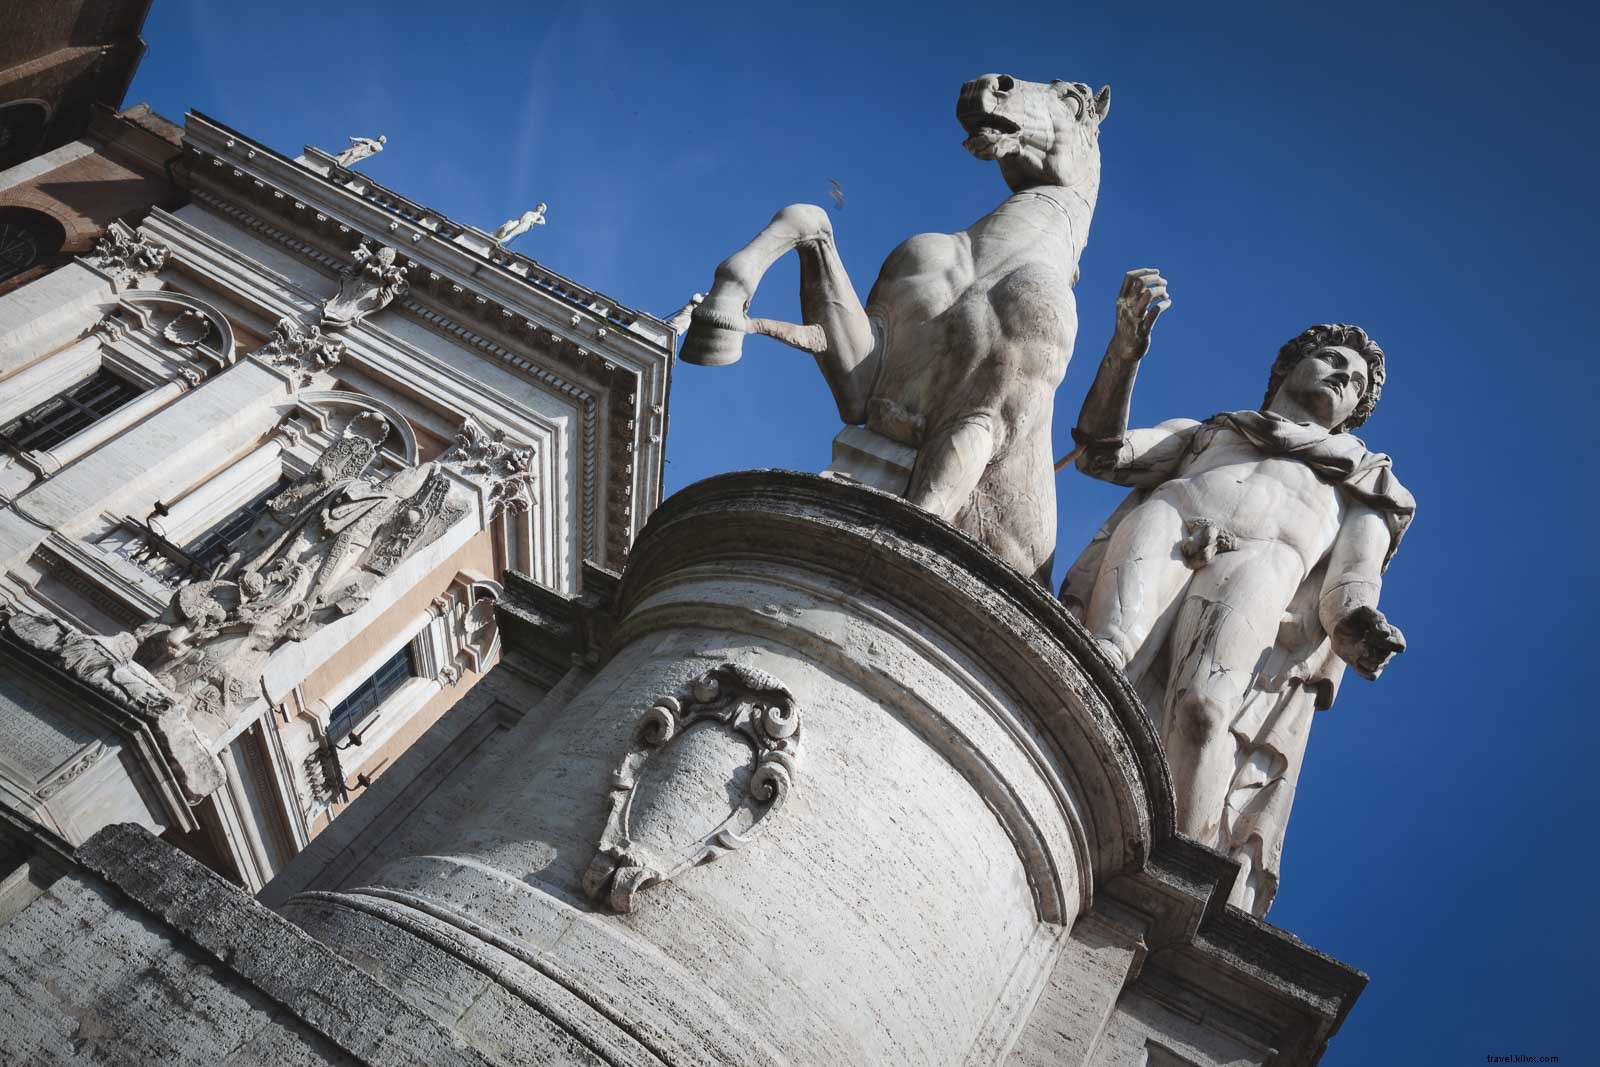 9 Fakta Menarik Tentang Roma, Italia Anda Mungkin Tidak Tahu